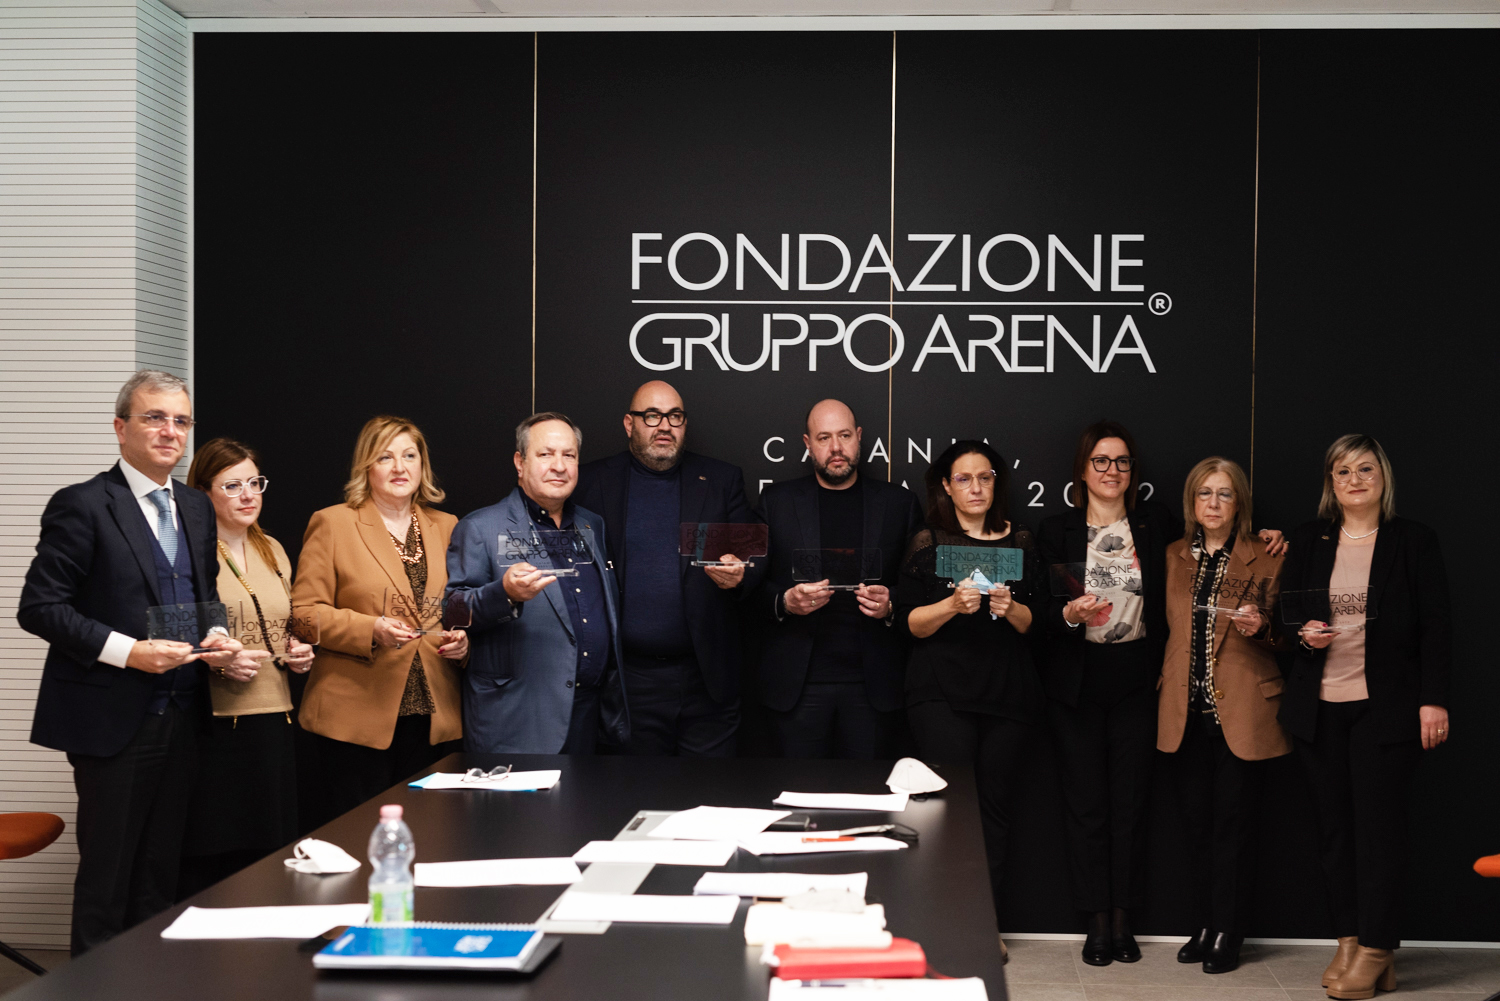 Fondazione Gruppo Arena